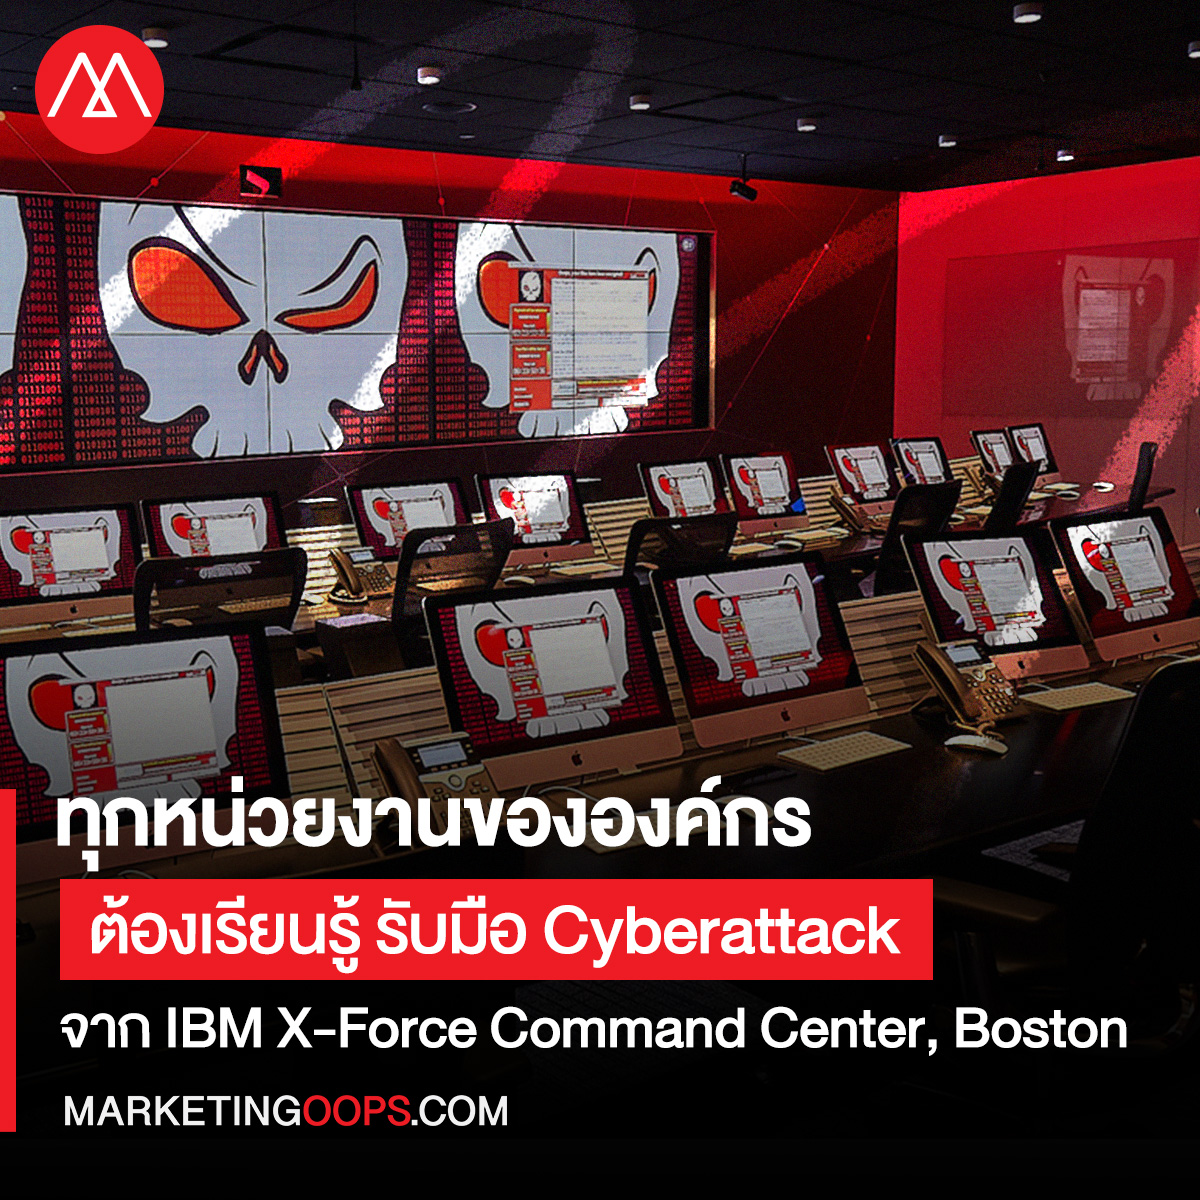 ทุกหน่วยงานขององค์กรต้องเรียนรู้ รับมือ Cyberattack กับ IBM X-Force Command Center, Boston